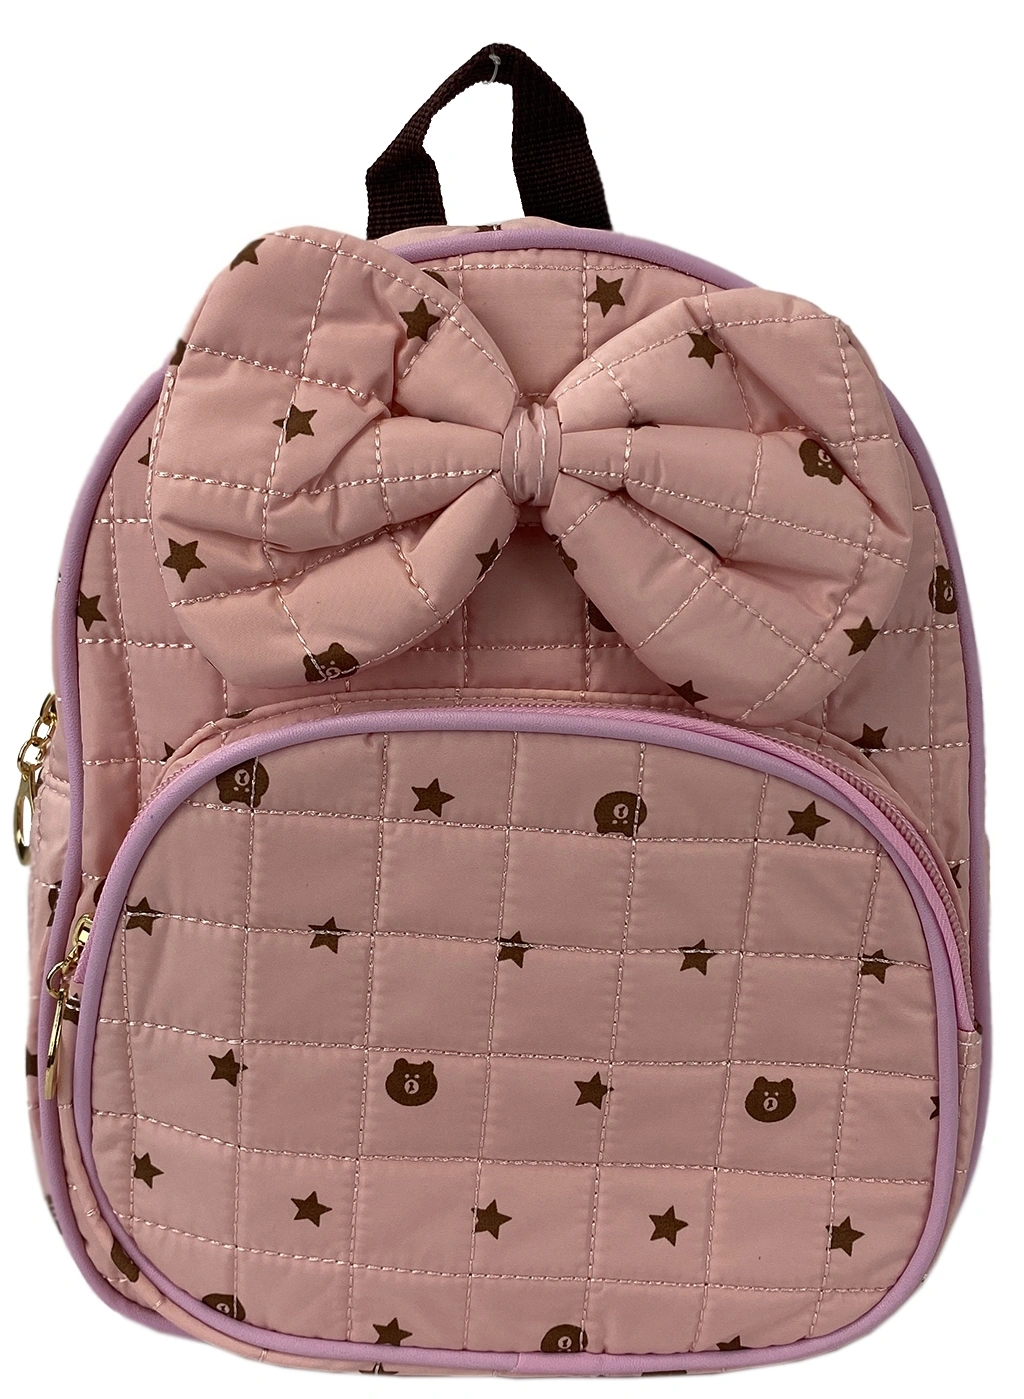 Рюкзак детский розовый  4515-1 фото 1